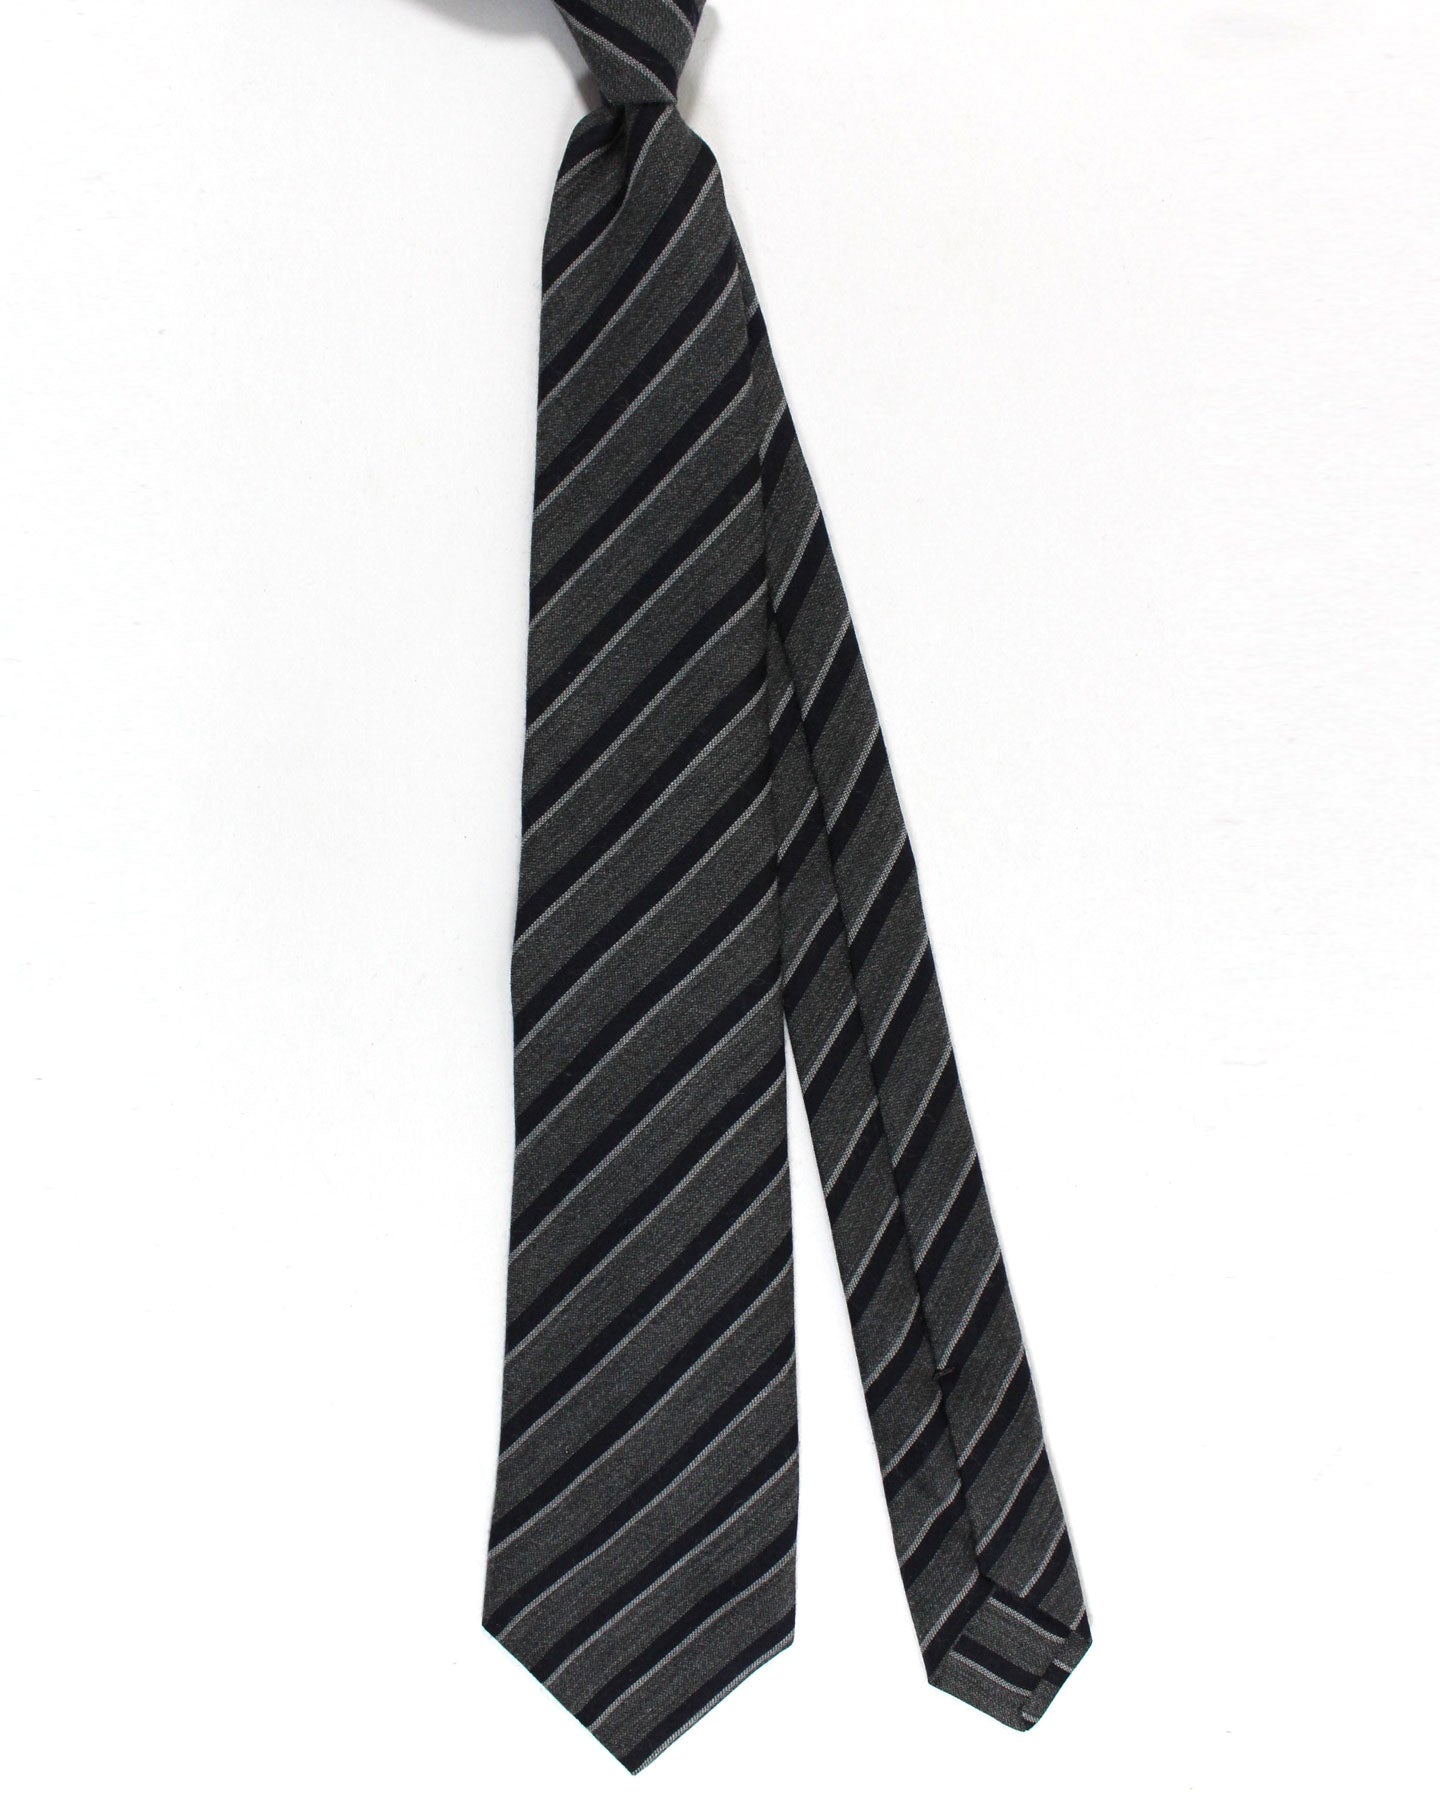 Kiton Wool Silk Tie Gray Dark Blue Stripes Design - Sevenfold Necktie